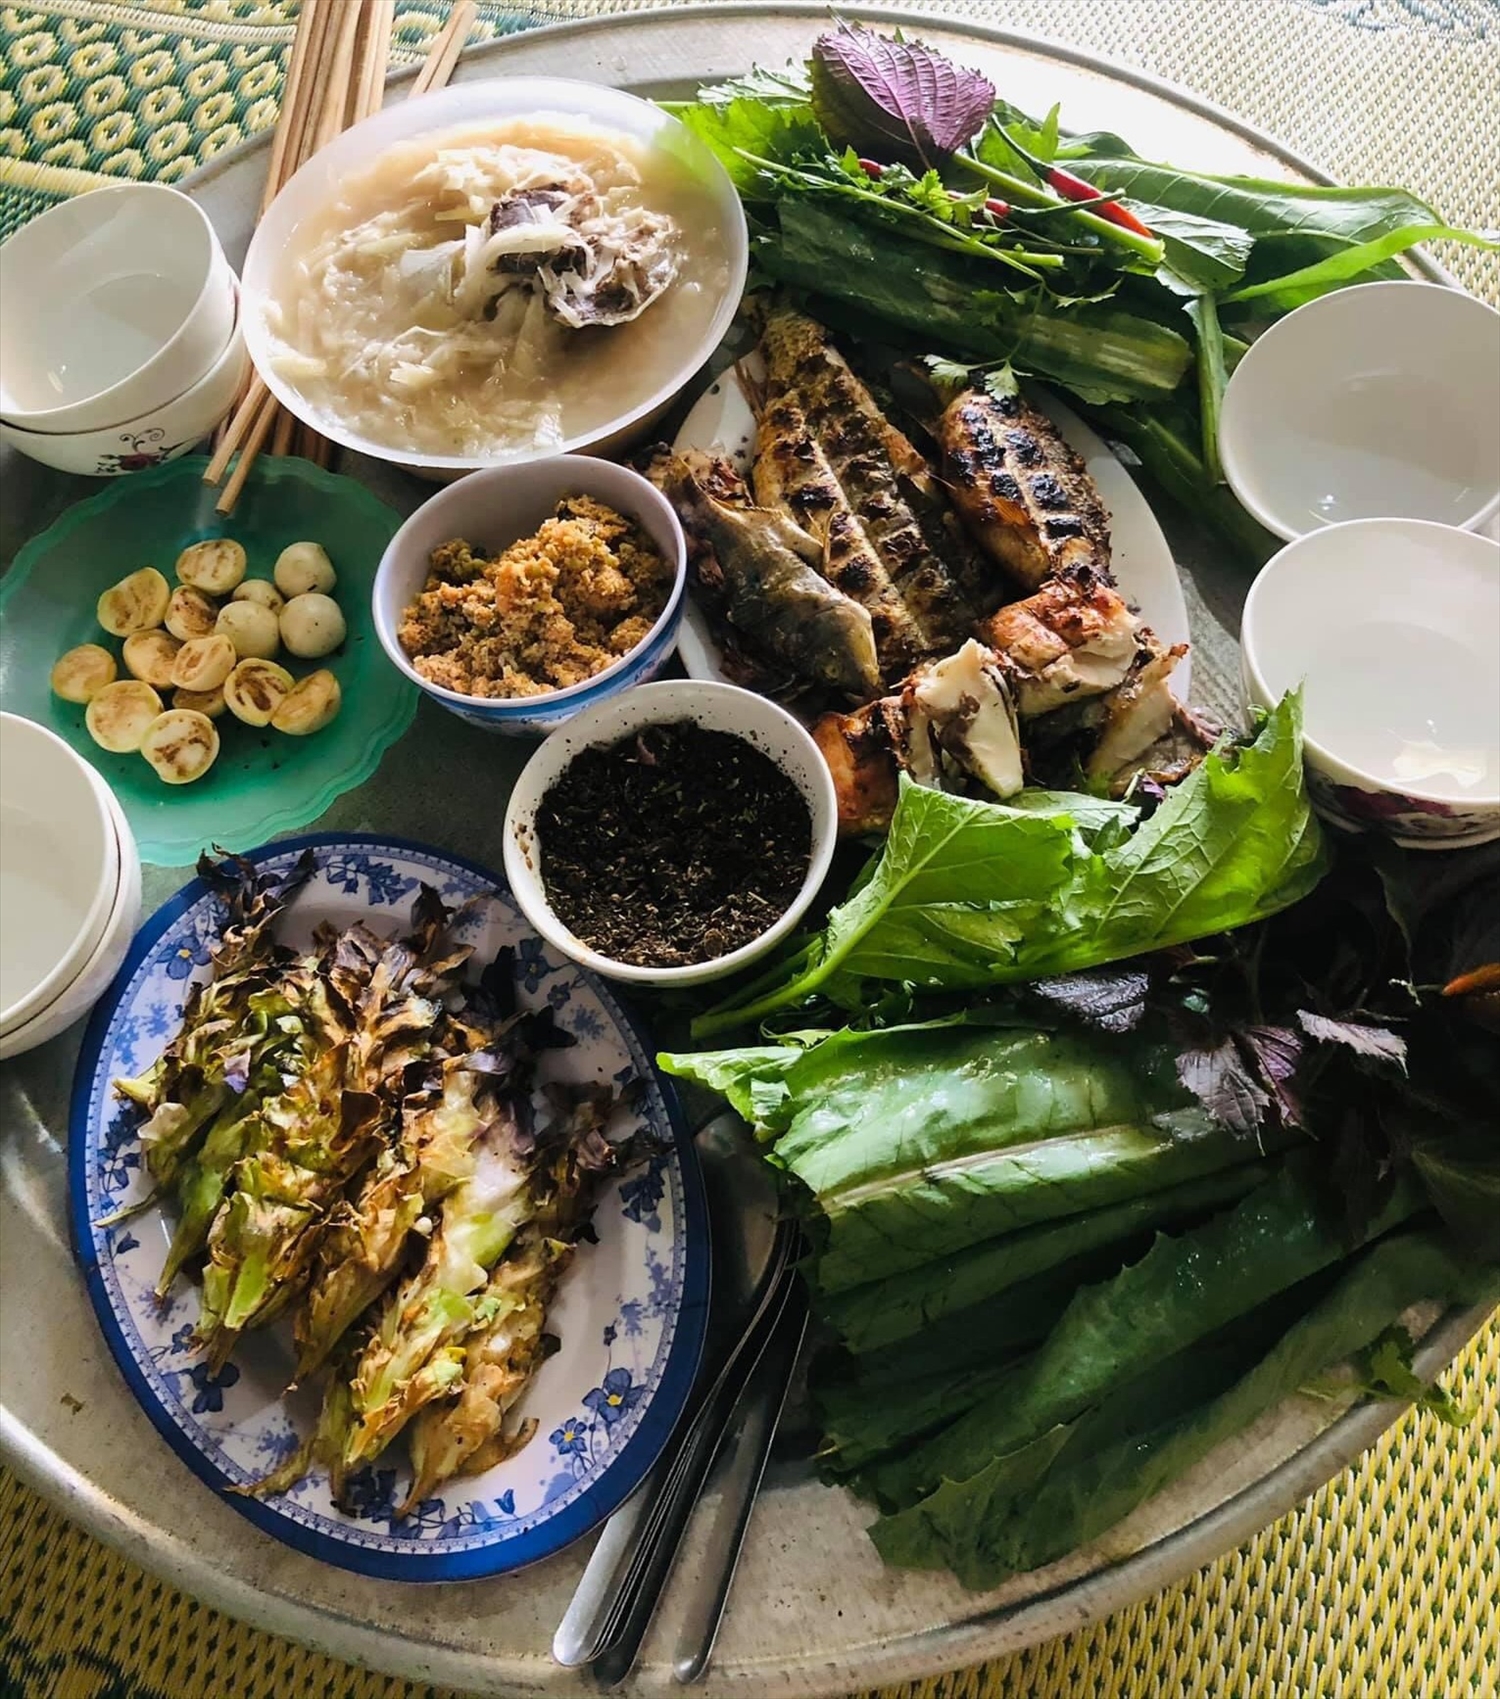 Bữa cơm của đồng bào Thái không thể thiếu bát “chéo” đặt giữa mâm